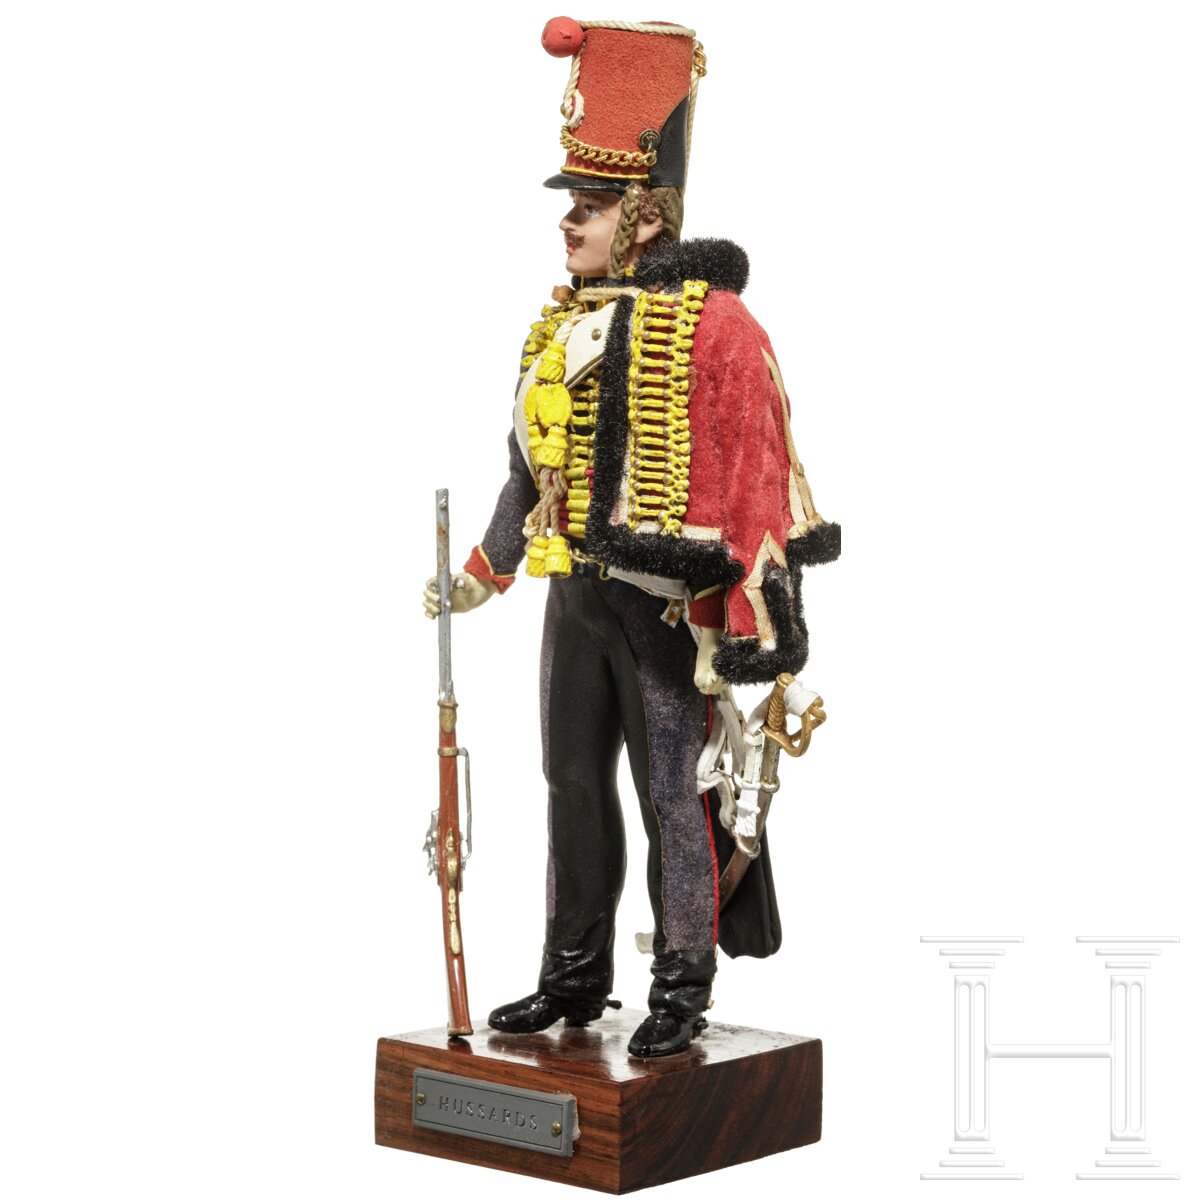 Husar um 1815 - Uniformfigur von Marcel Riffet, 20. Jhdt. - Image 3 of 6